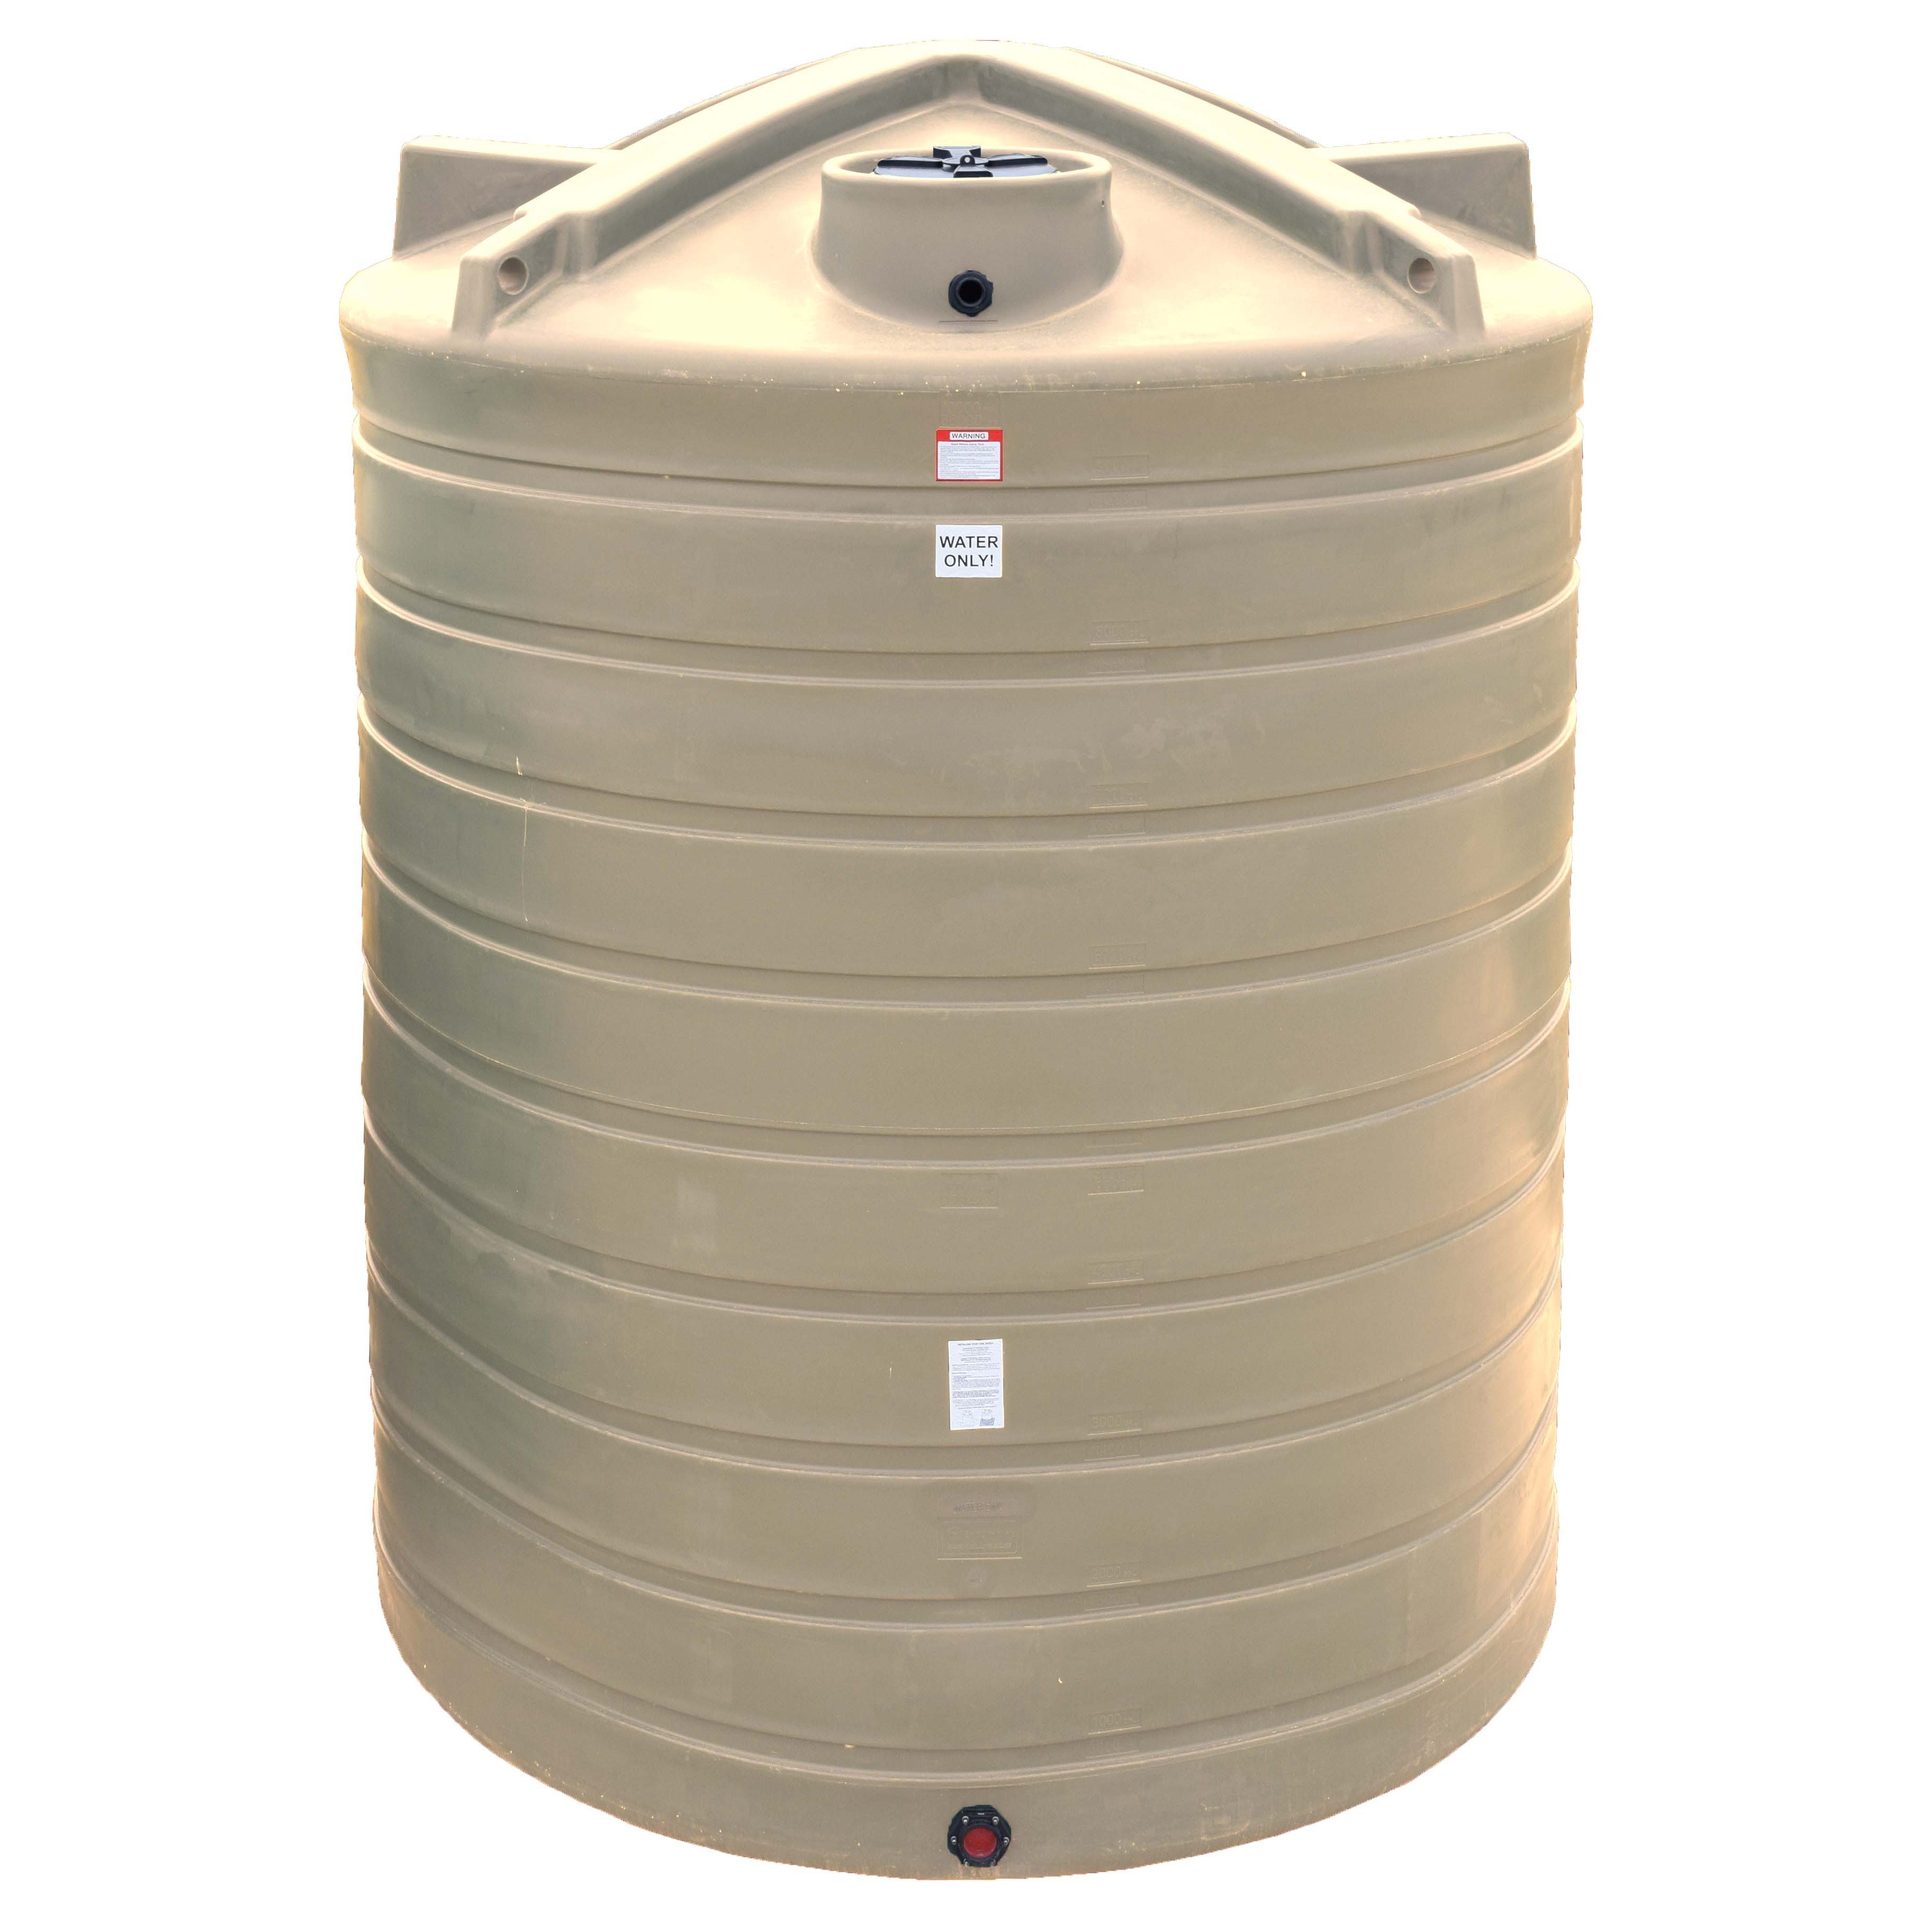 Best ideas about Vertical Water Storage Tank
. Save or Pin Gallon Vertical Water Storage Tank Now.